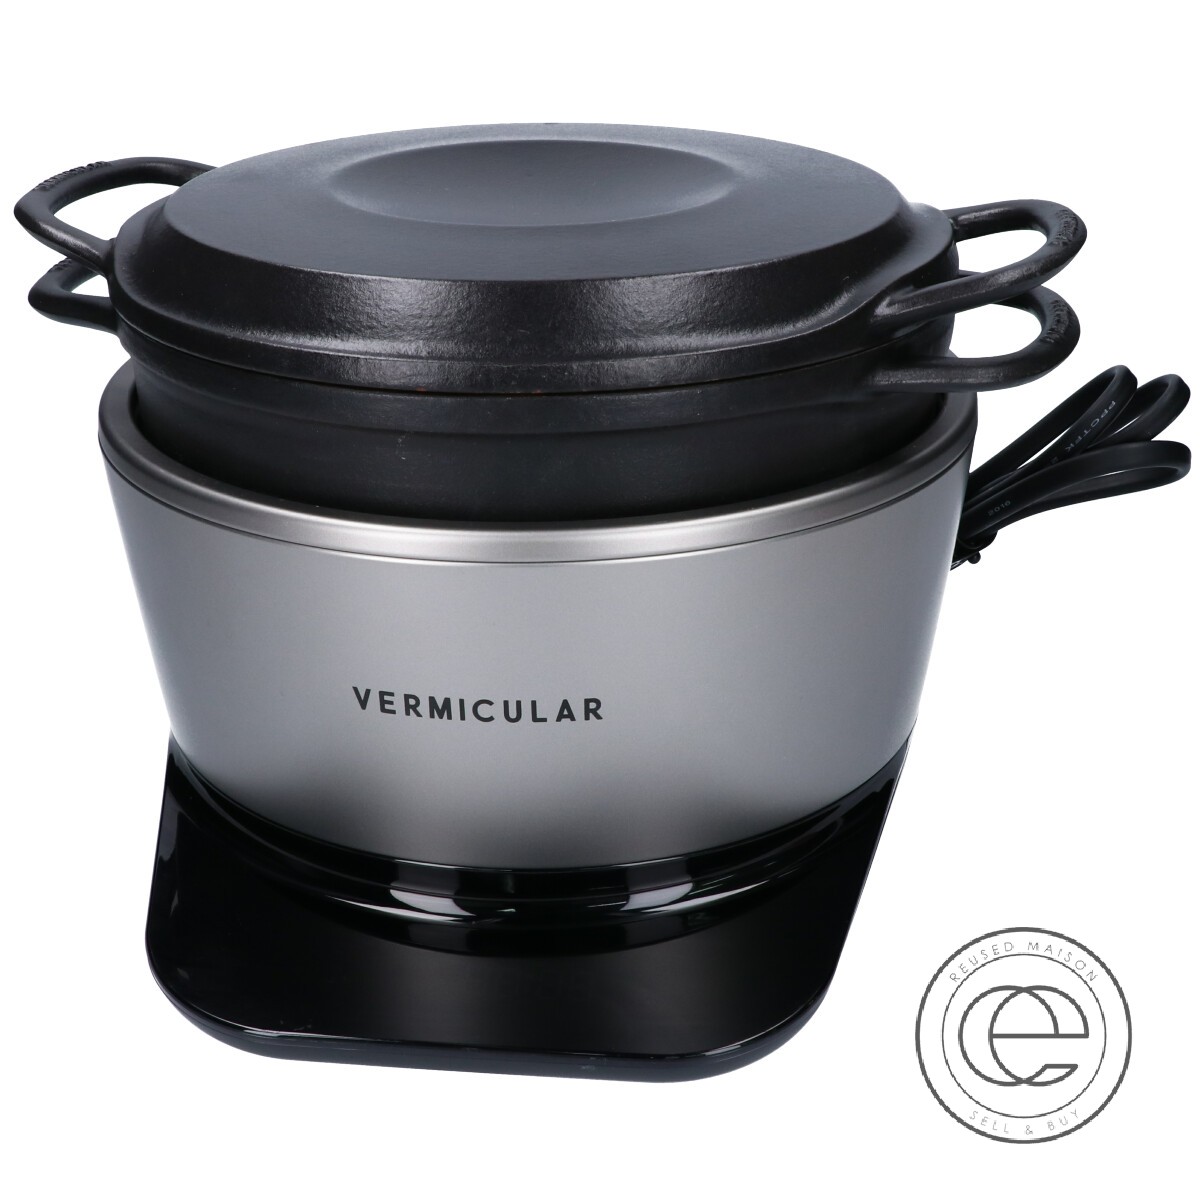 【楽天市場】Vermicular バーミキュラ RP23A-SV ライスポット 5合炊き炊飯器 ソリッドシルバー 【中古】：ブランドリサイクル